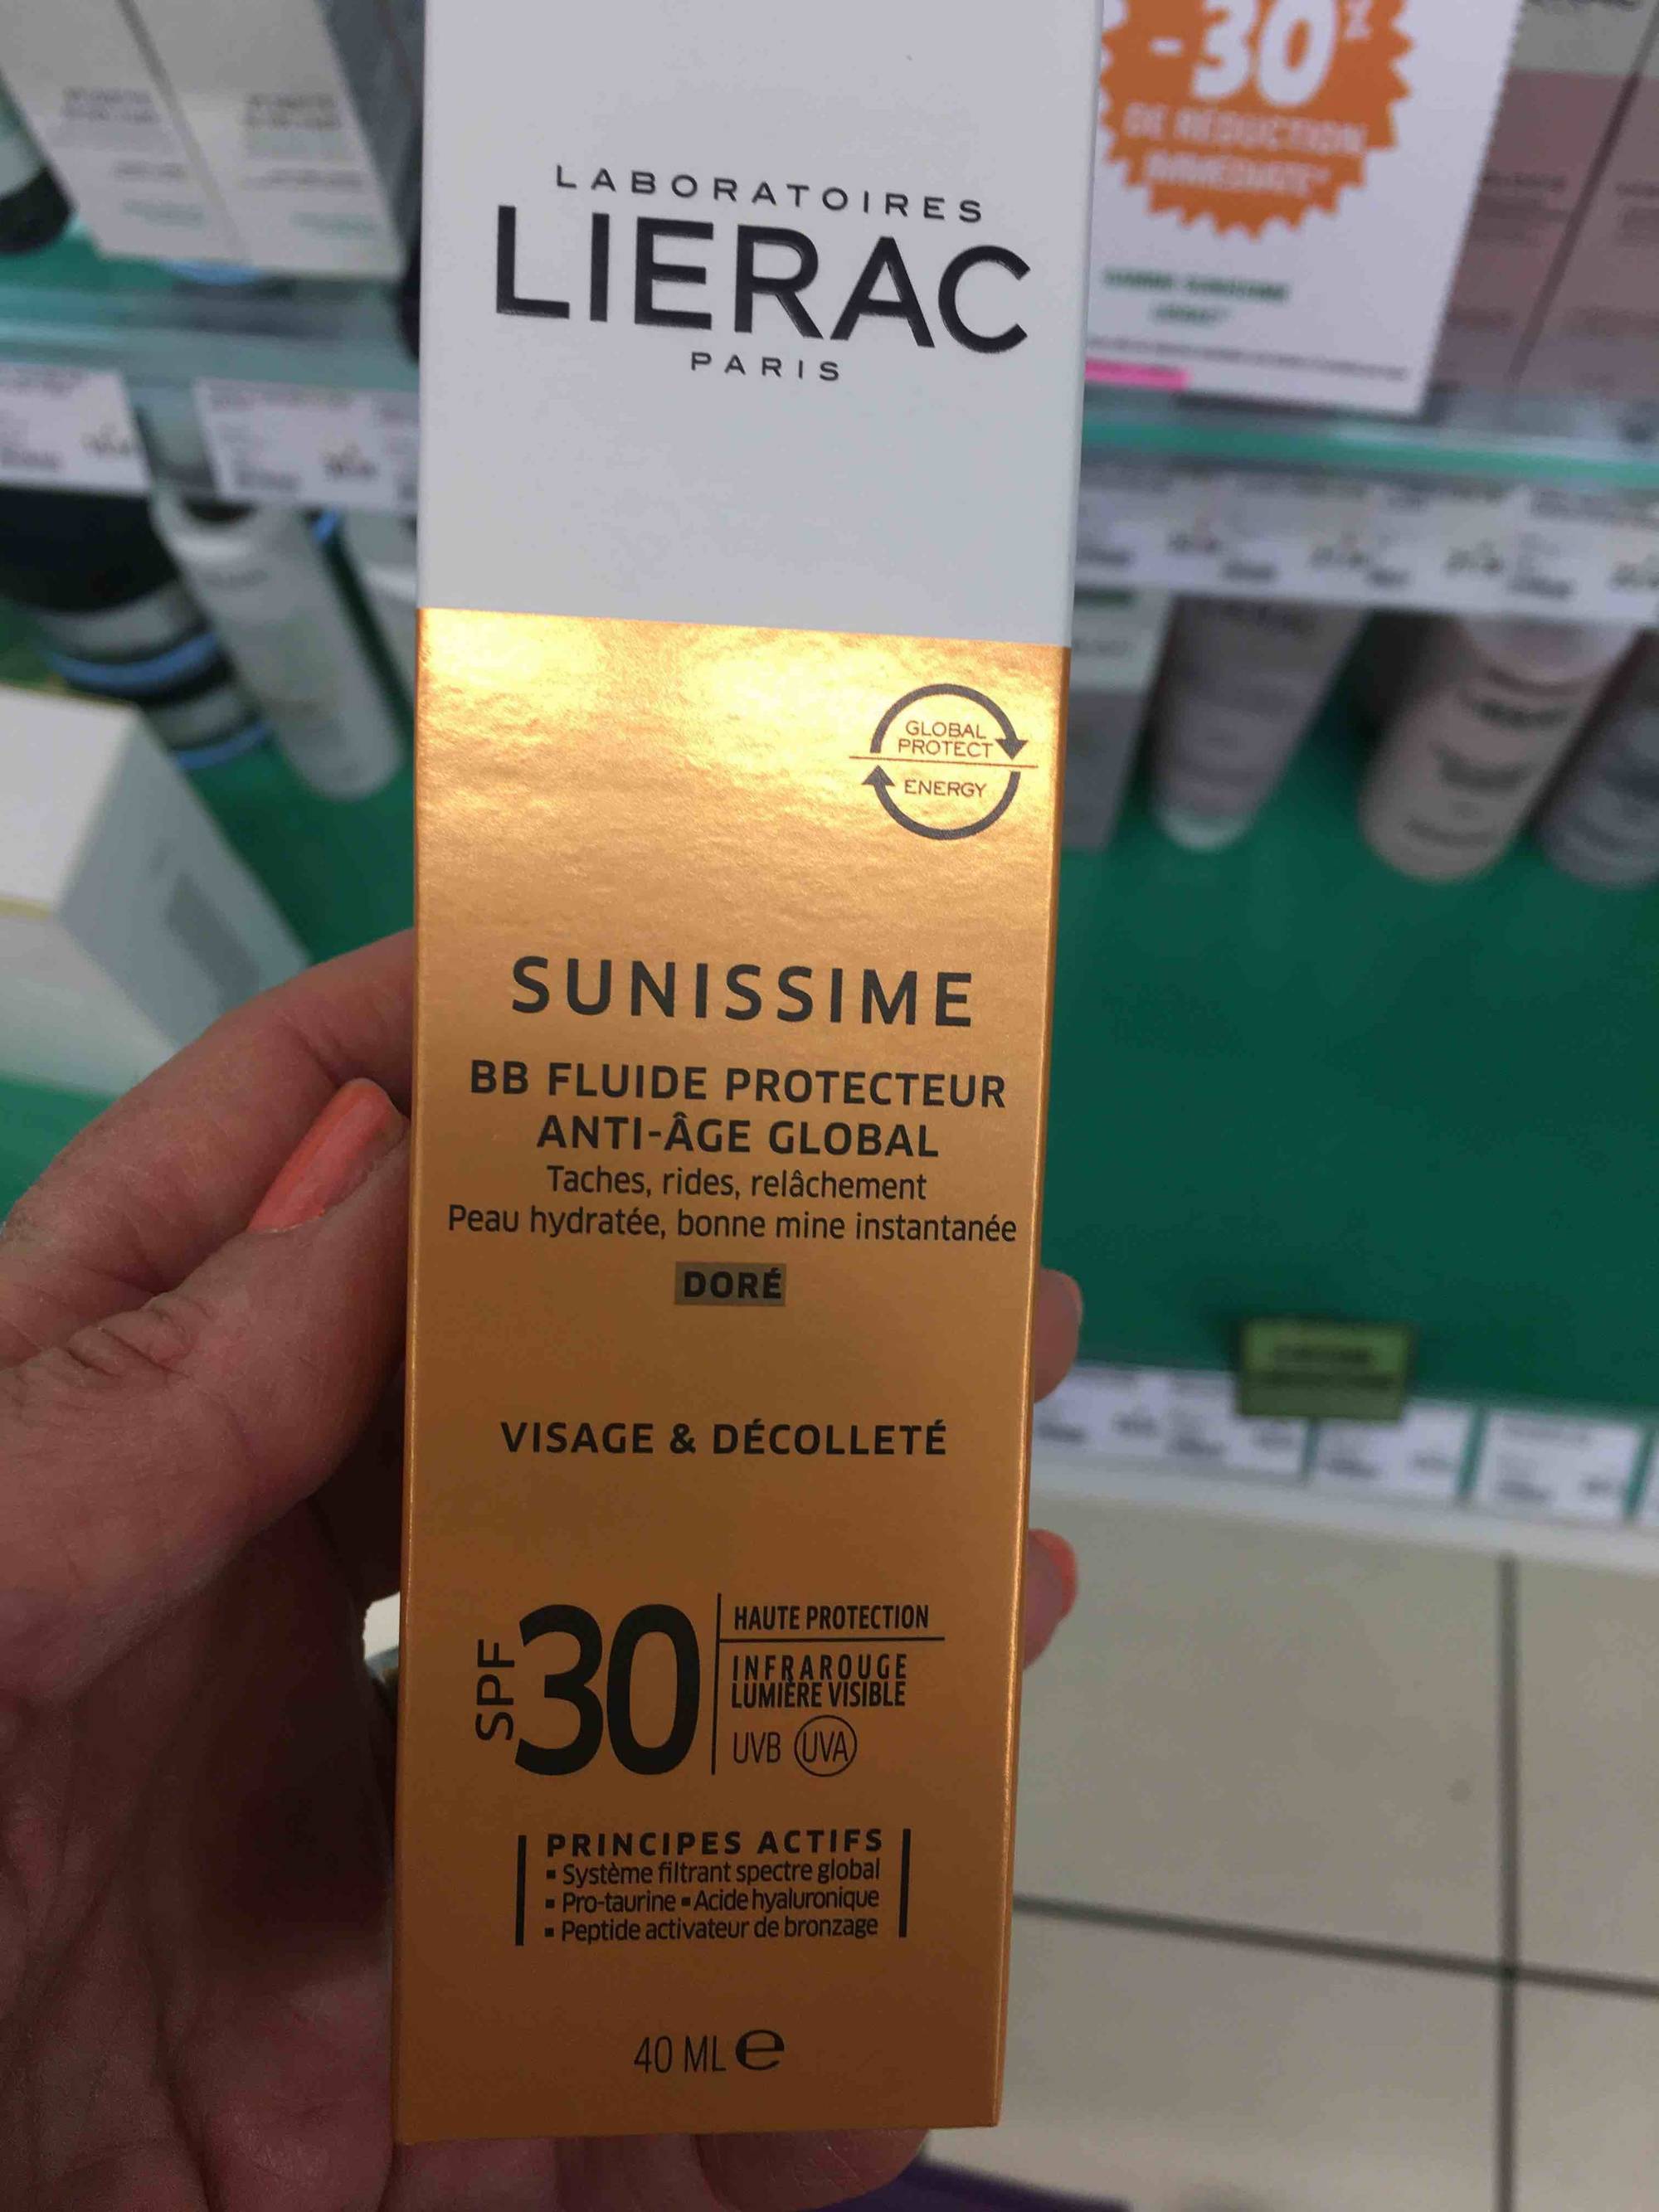 LIÉRAC PARIS - Sunissime - BB fluide protecteur anti-âge global doré